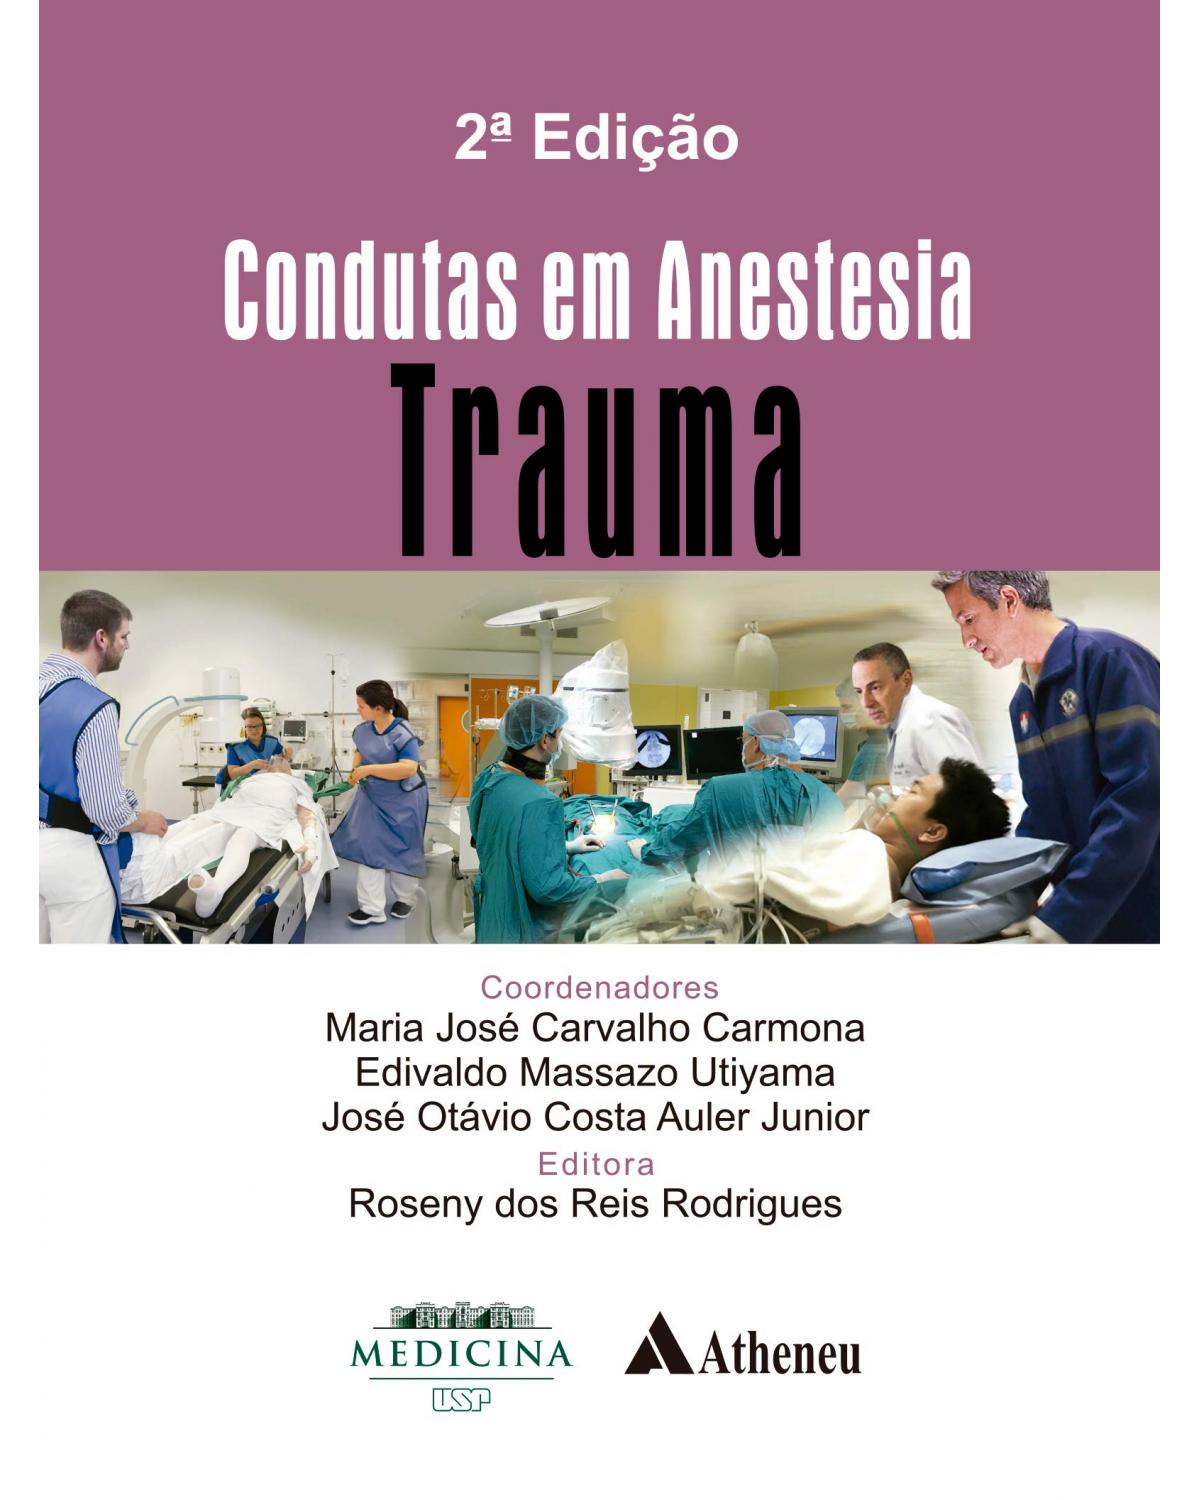 Condutas em anestesia - trauma - 2ª Edição | 2018